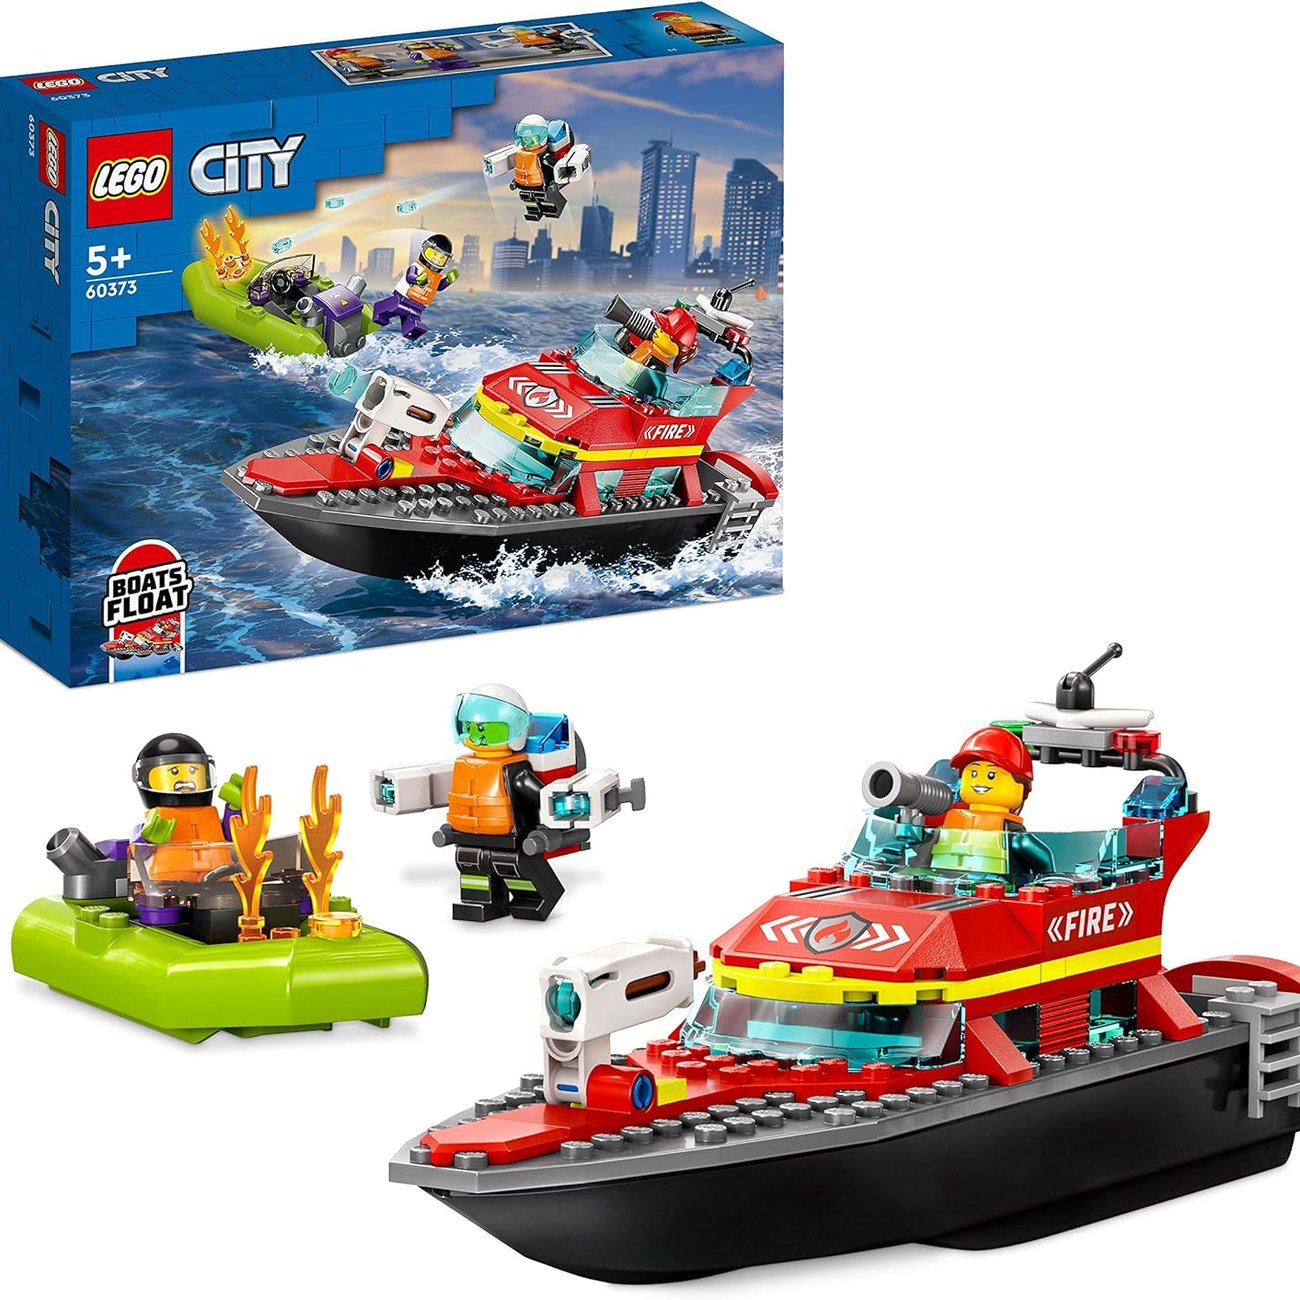 LEGO City Feuerwehrboot fürs Wasser, mit Rennboot, 3 Minifiguren und Jetpack